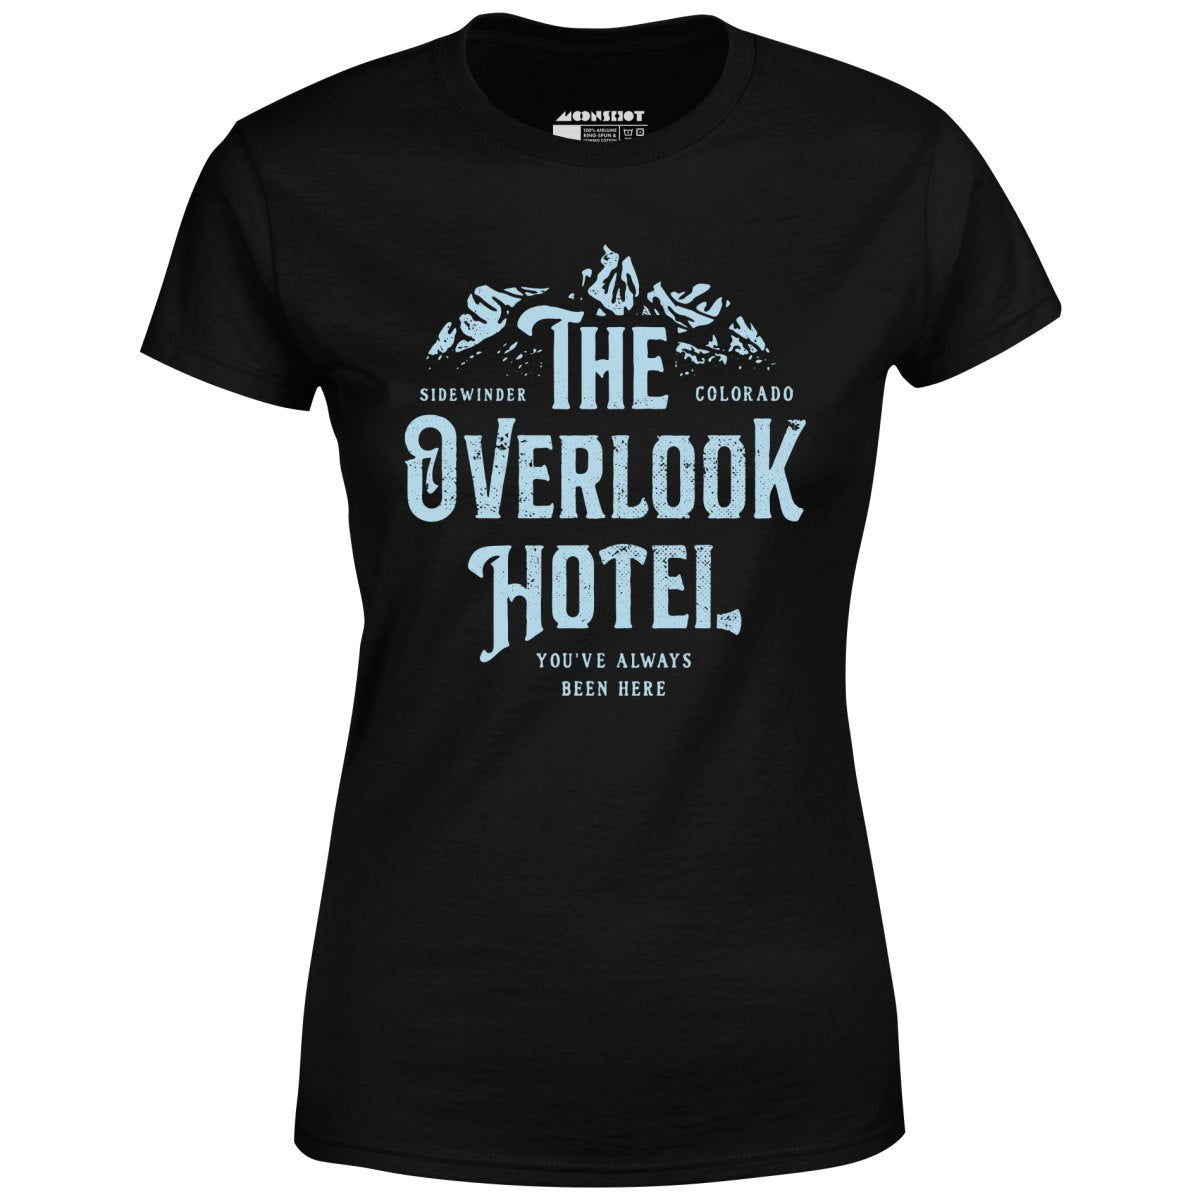 The Overlook Hotel - Women's T-Shirt